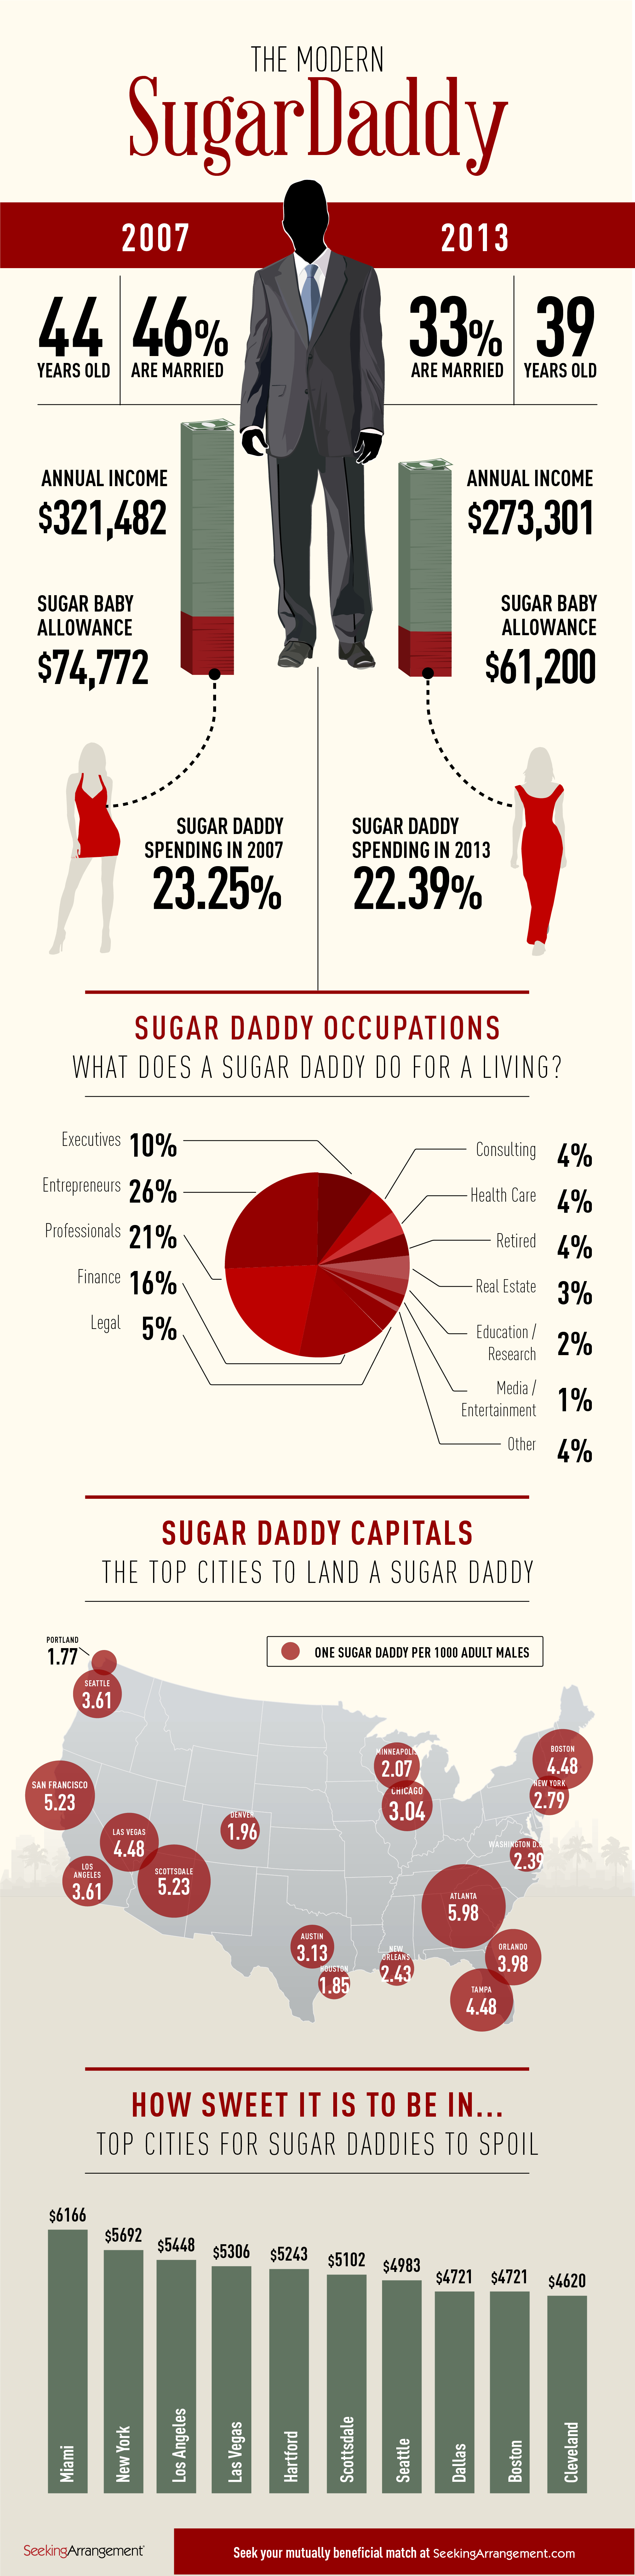 Atlanta ranked No. 1 home of 'Sugar Daddies' - The Signal